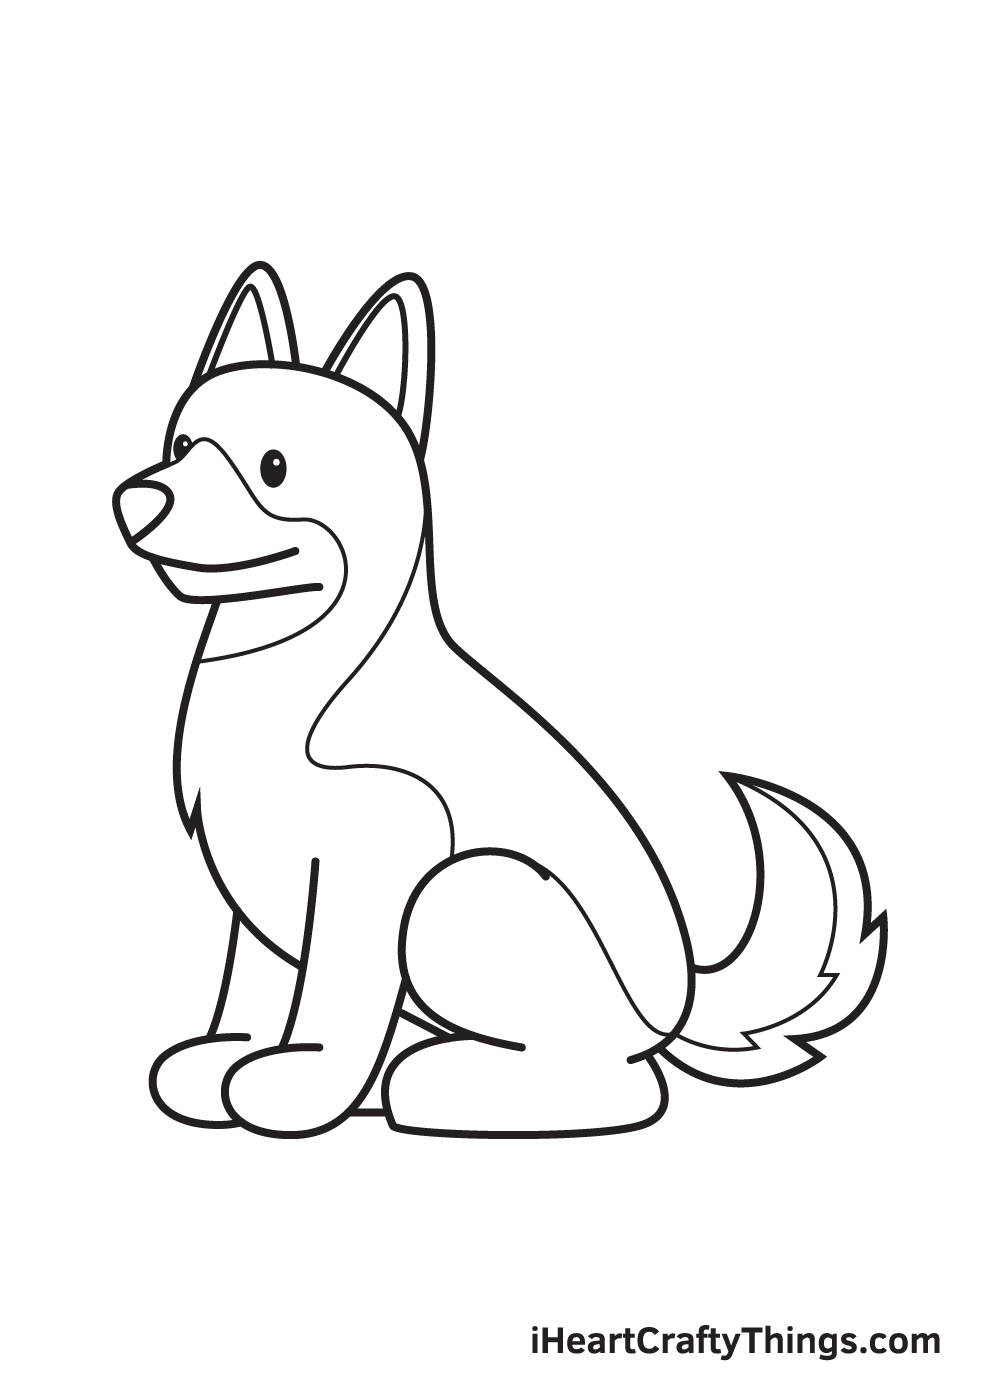 German Sheperd DRAWING – STEP 9 - Cách vẽ con chó đơn giản với 8 bước cơ bản có hướng dẫn chi tiết